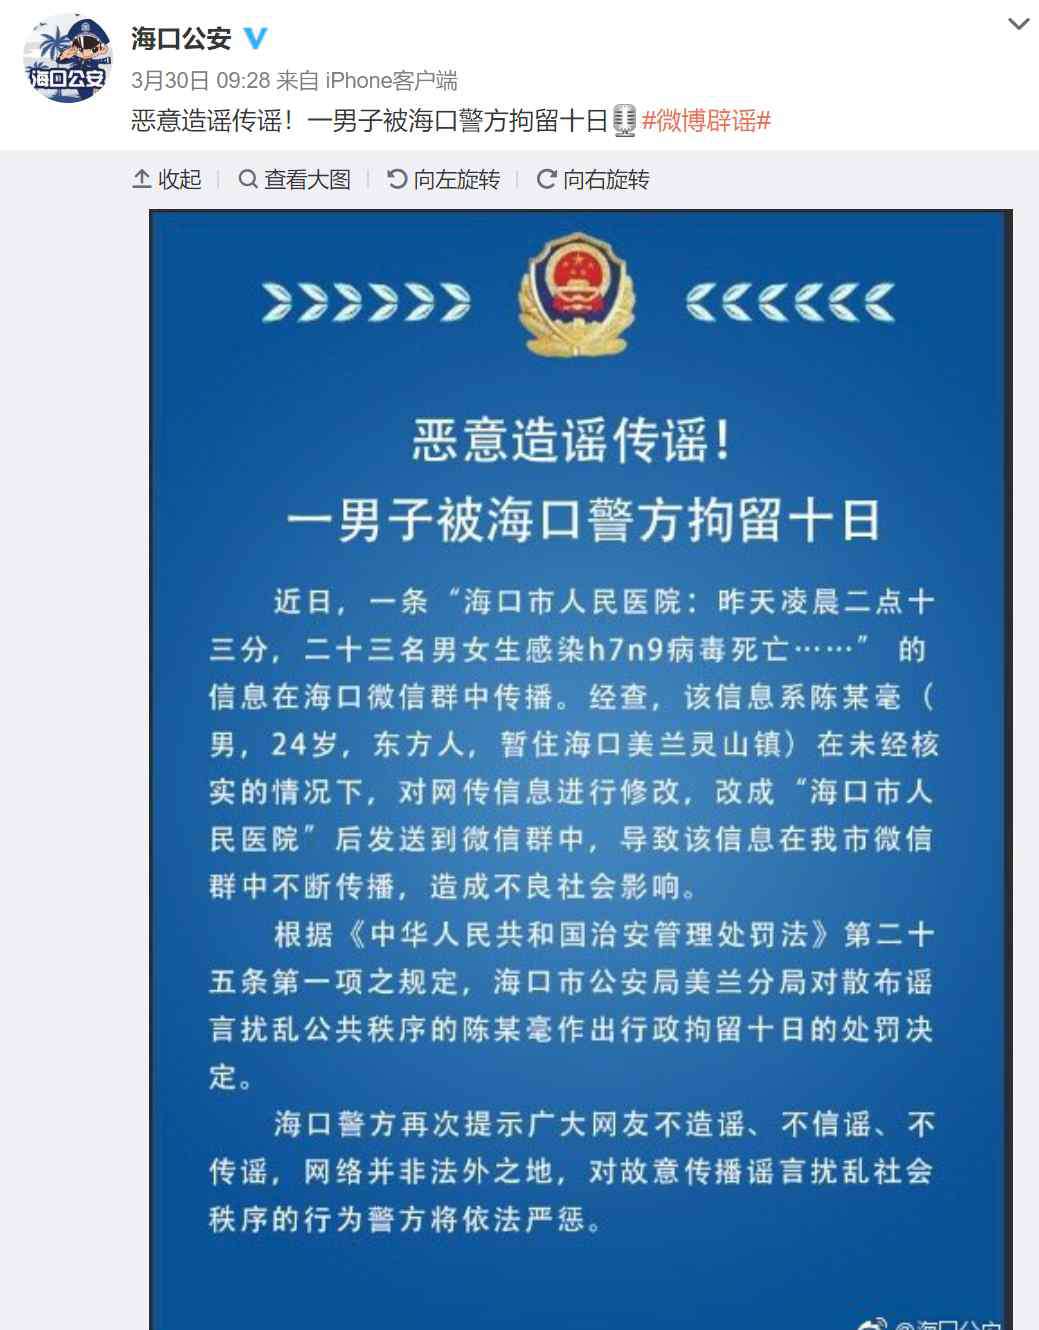 上海h7n9最新消息 吃“上海青”也会感染h7n9？这个骇人听闻的谣言又有新“马甲”了